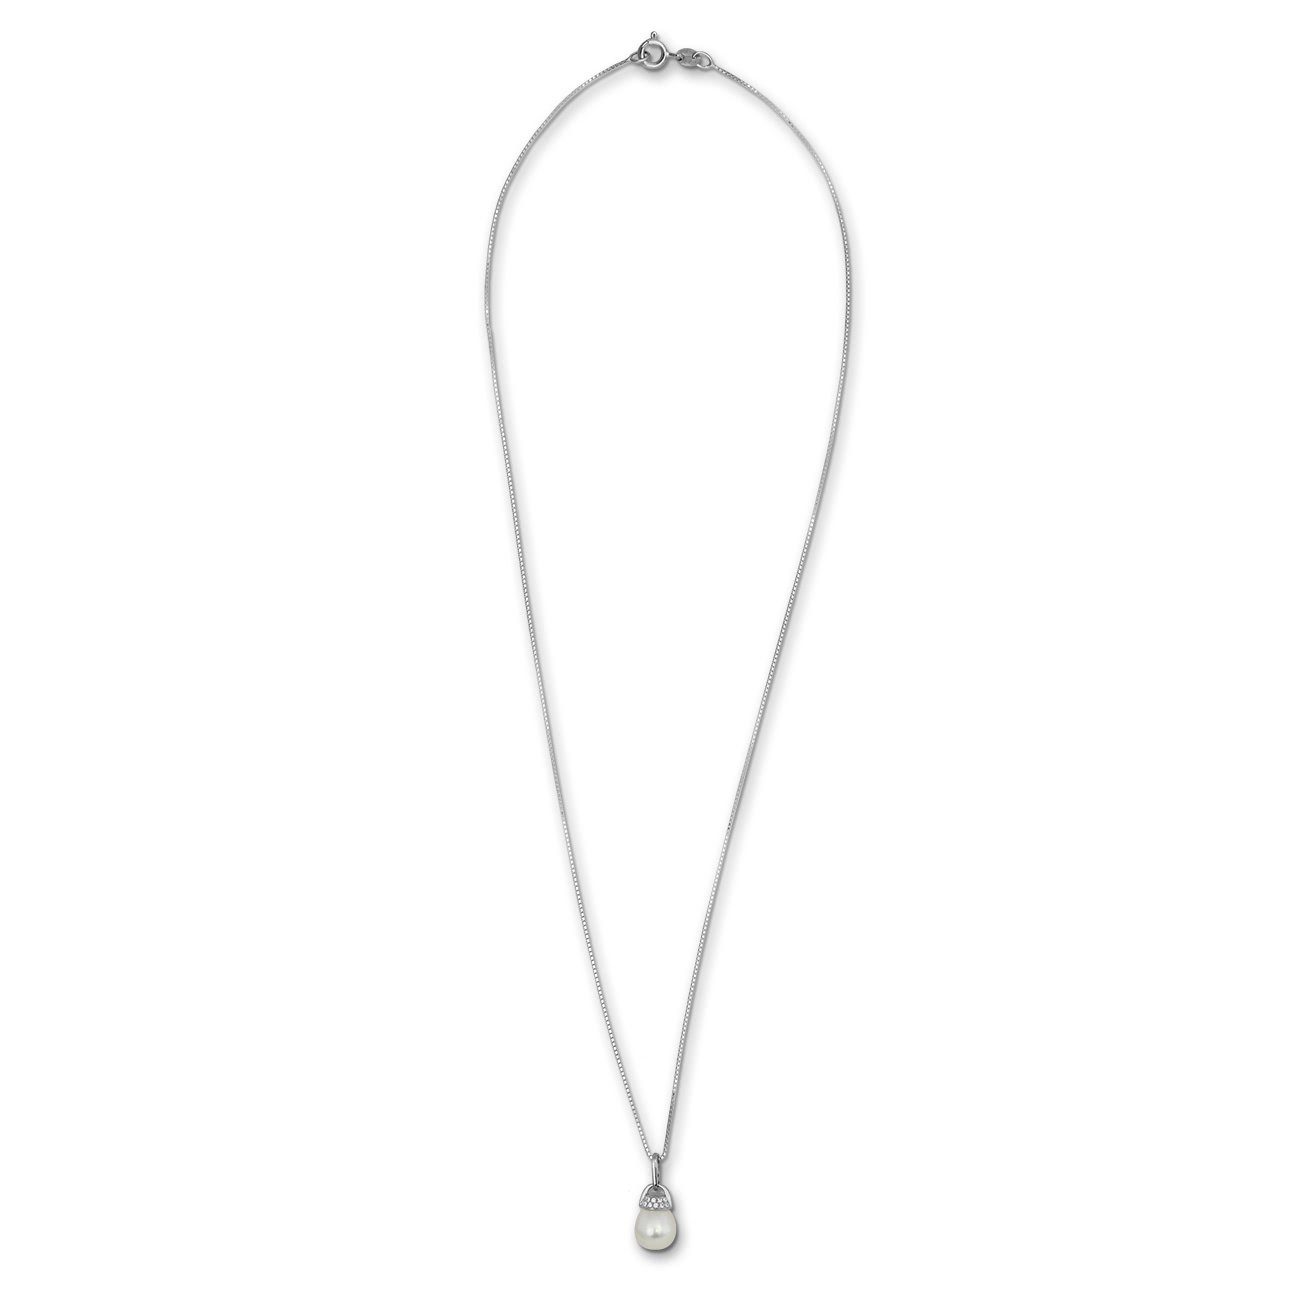 SilberDream ca. weiß silber Halskette Silberkette Farbe: weiß 925 45cm, Damen, silber, Silber, Halsketten SilberDream Sterling